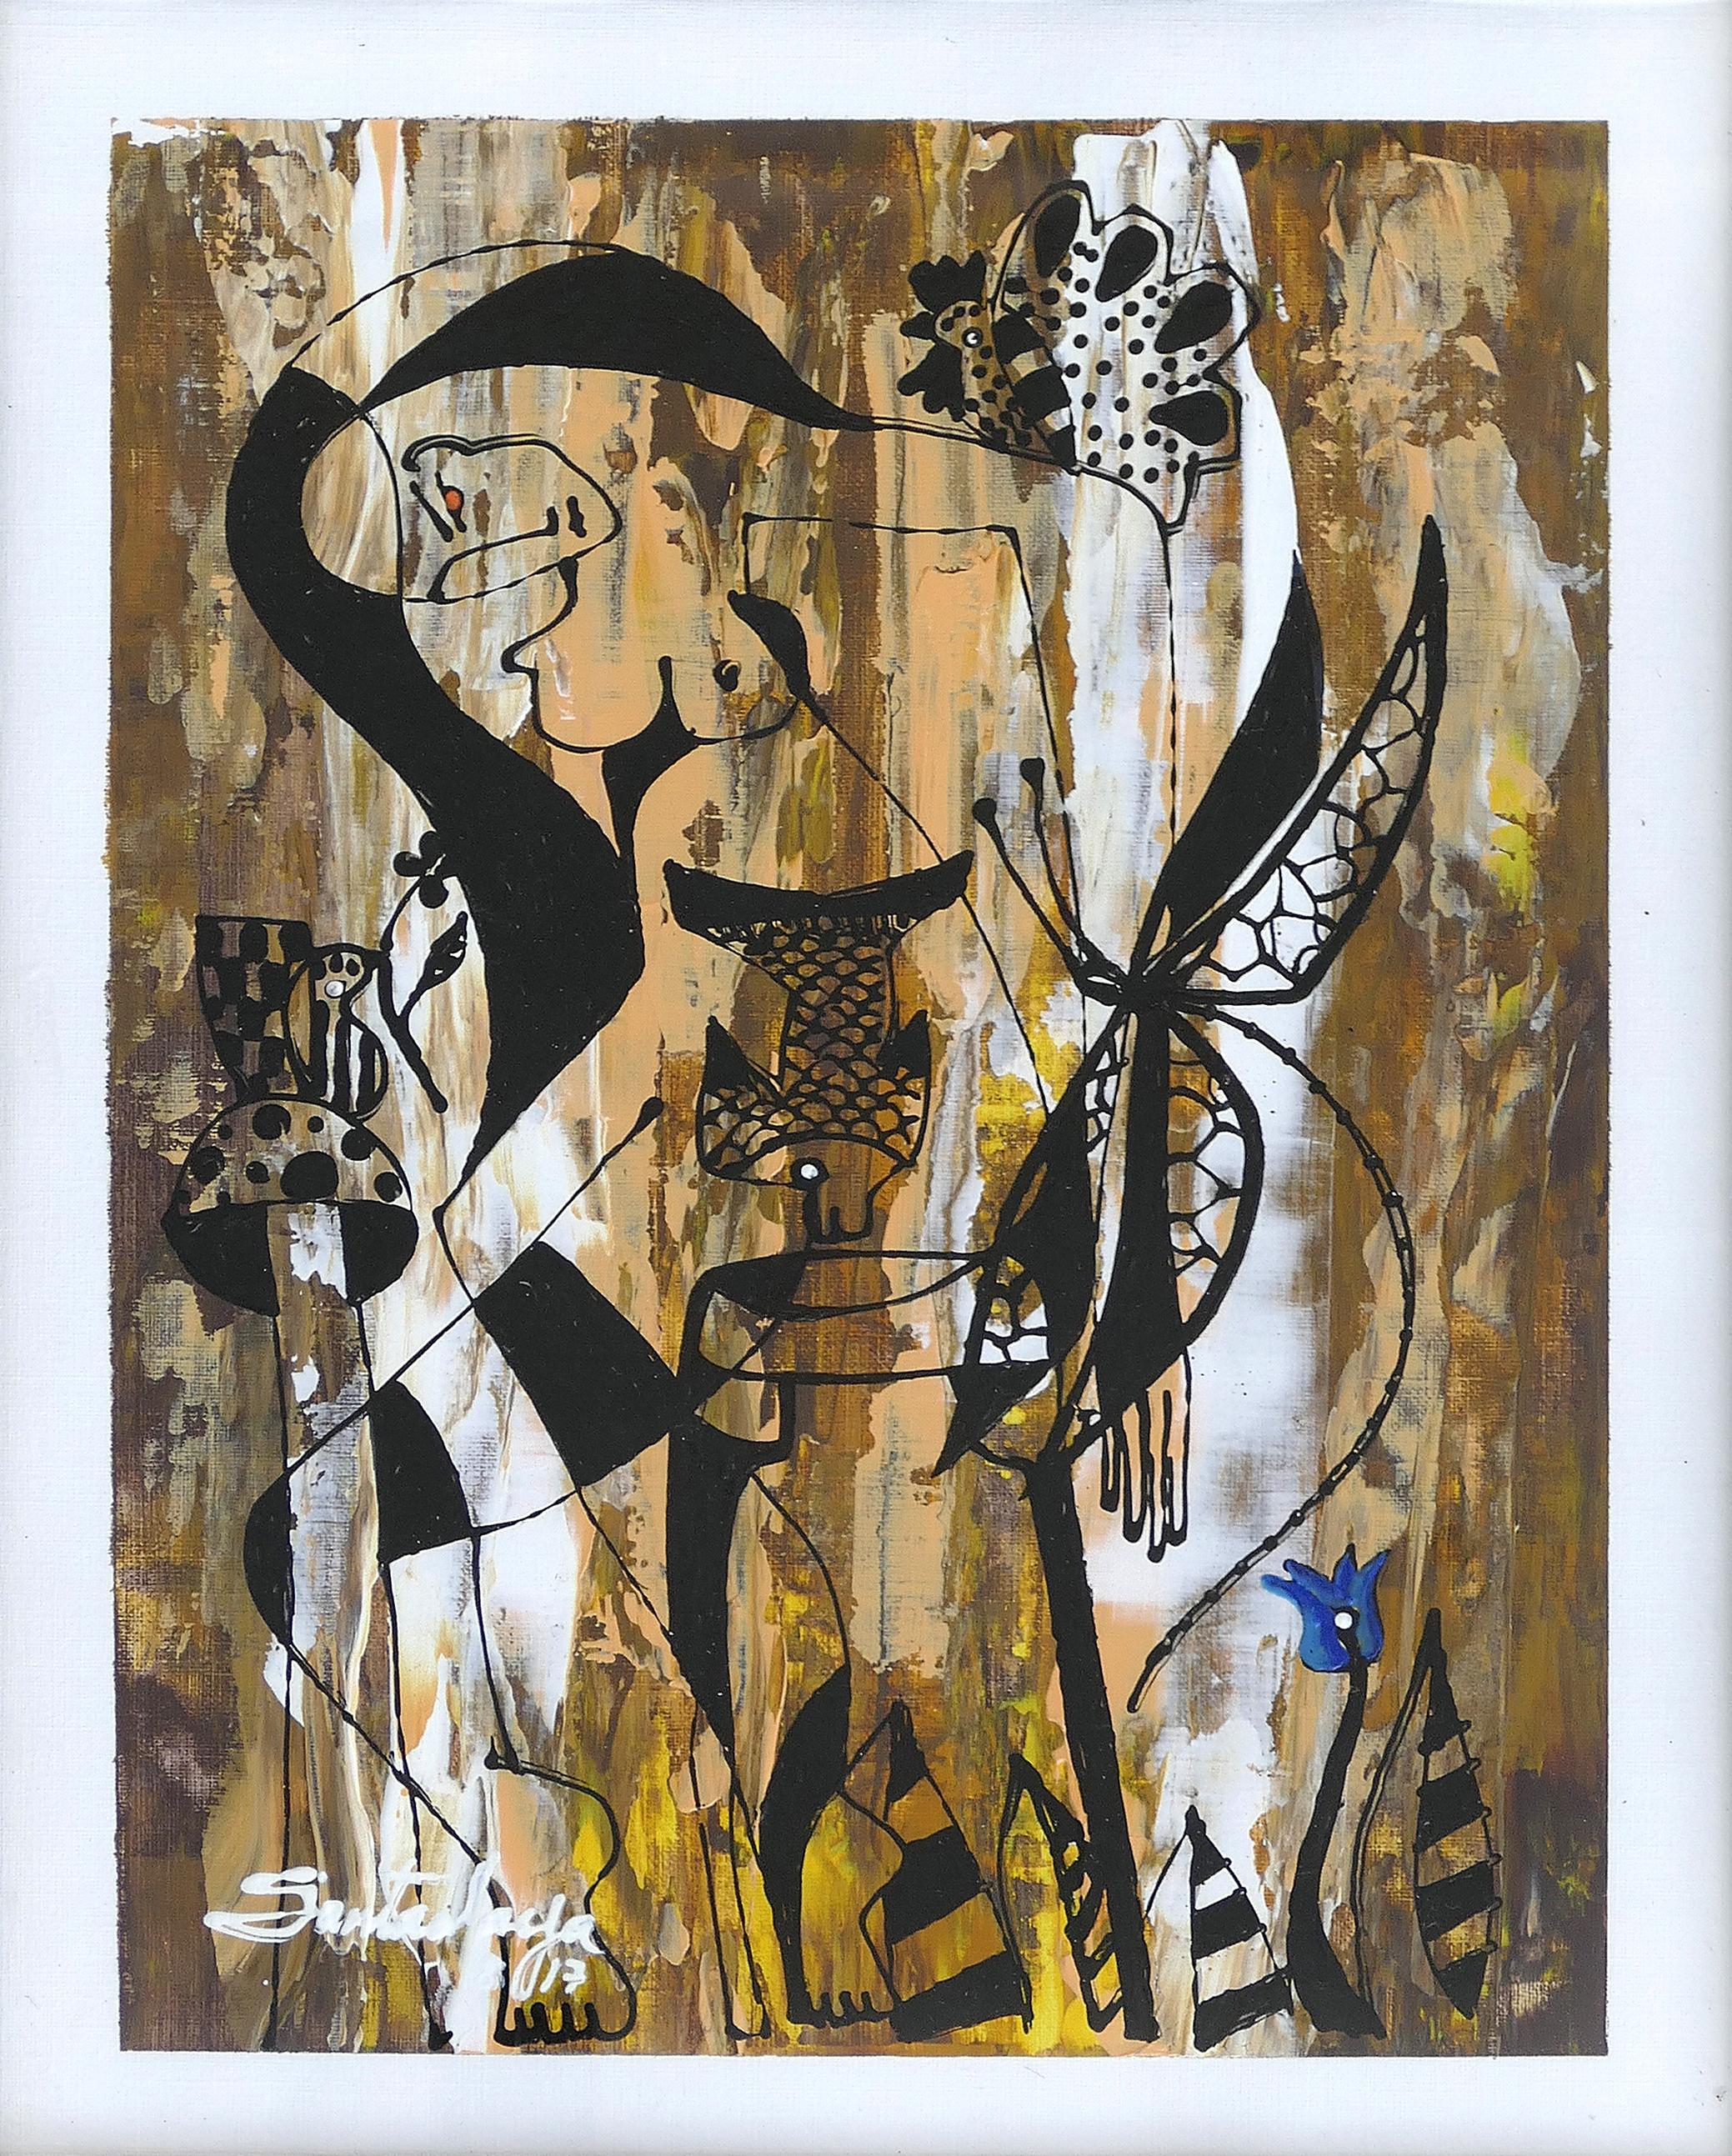 Hiremio Garcia Santaolaya abstrakte Malerei, kubanisch-amerikanischer Künstler

Zum Verkauf angeboten wird ein Original abstrakte figurative Acryl-Gemälde auf Papier von kubanisch-amerikanischen Künstler Hiremio Garcia Santaolaya. Der Künstler wurde